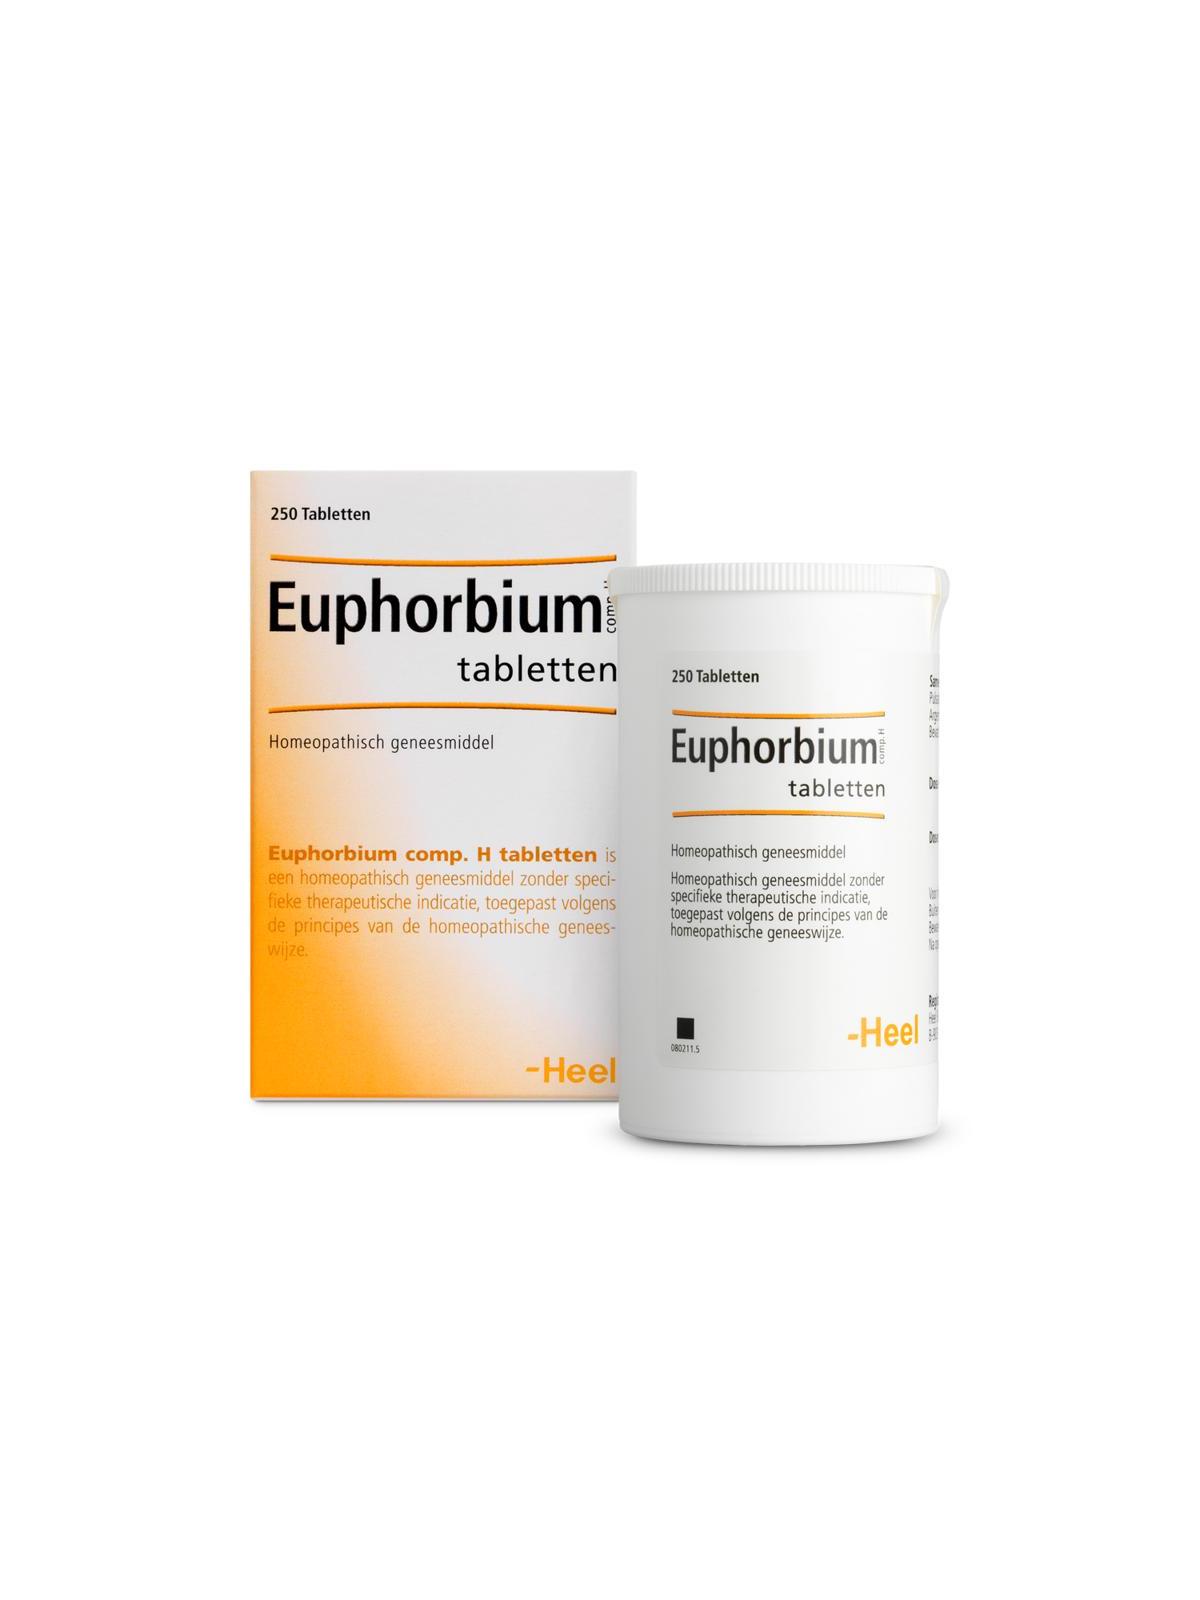 Euphorbium compositum H